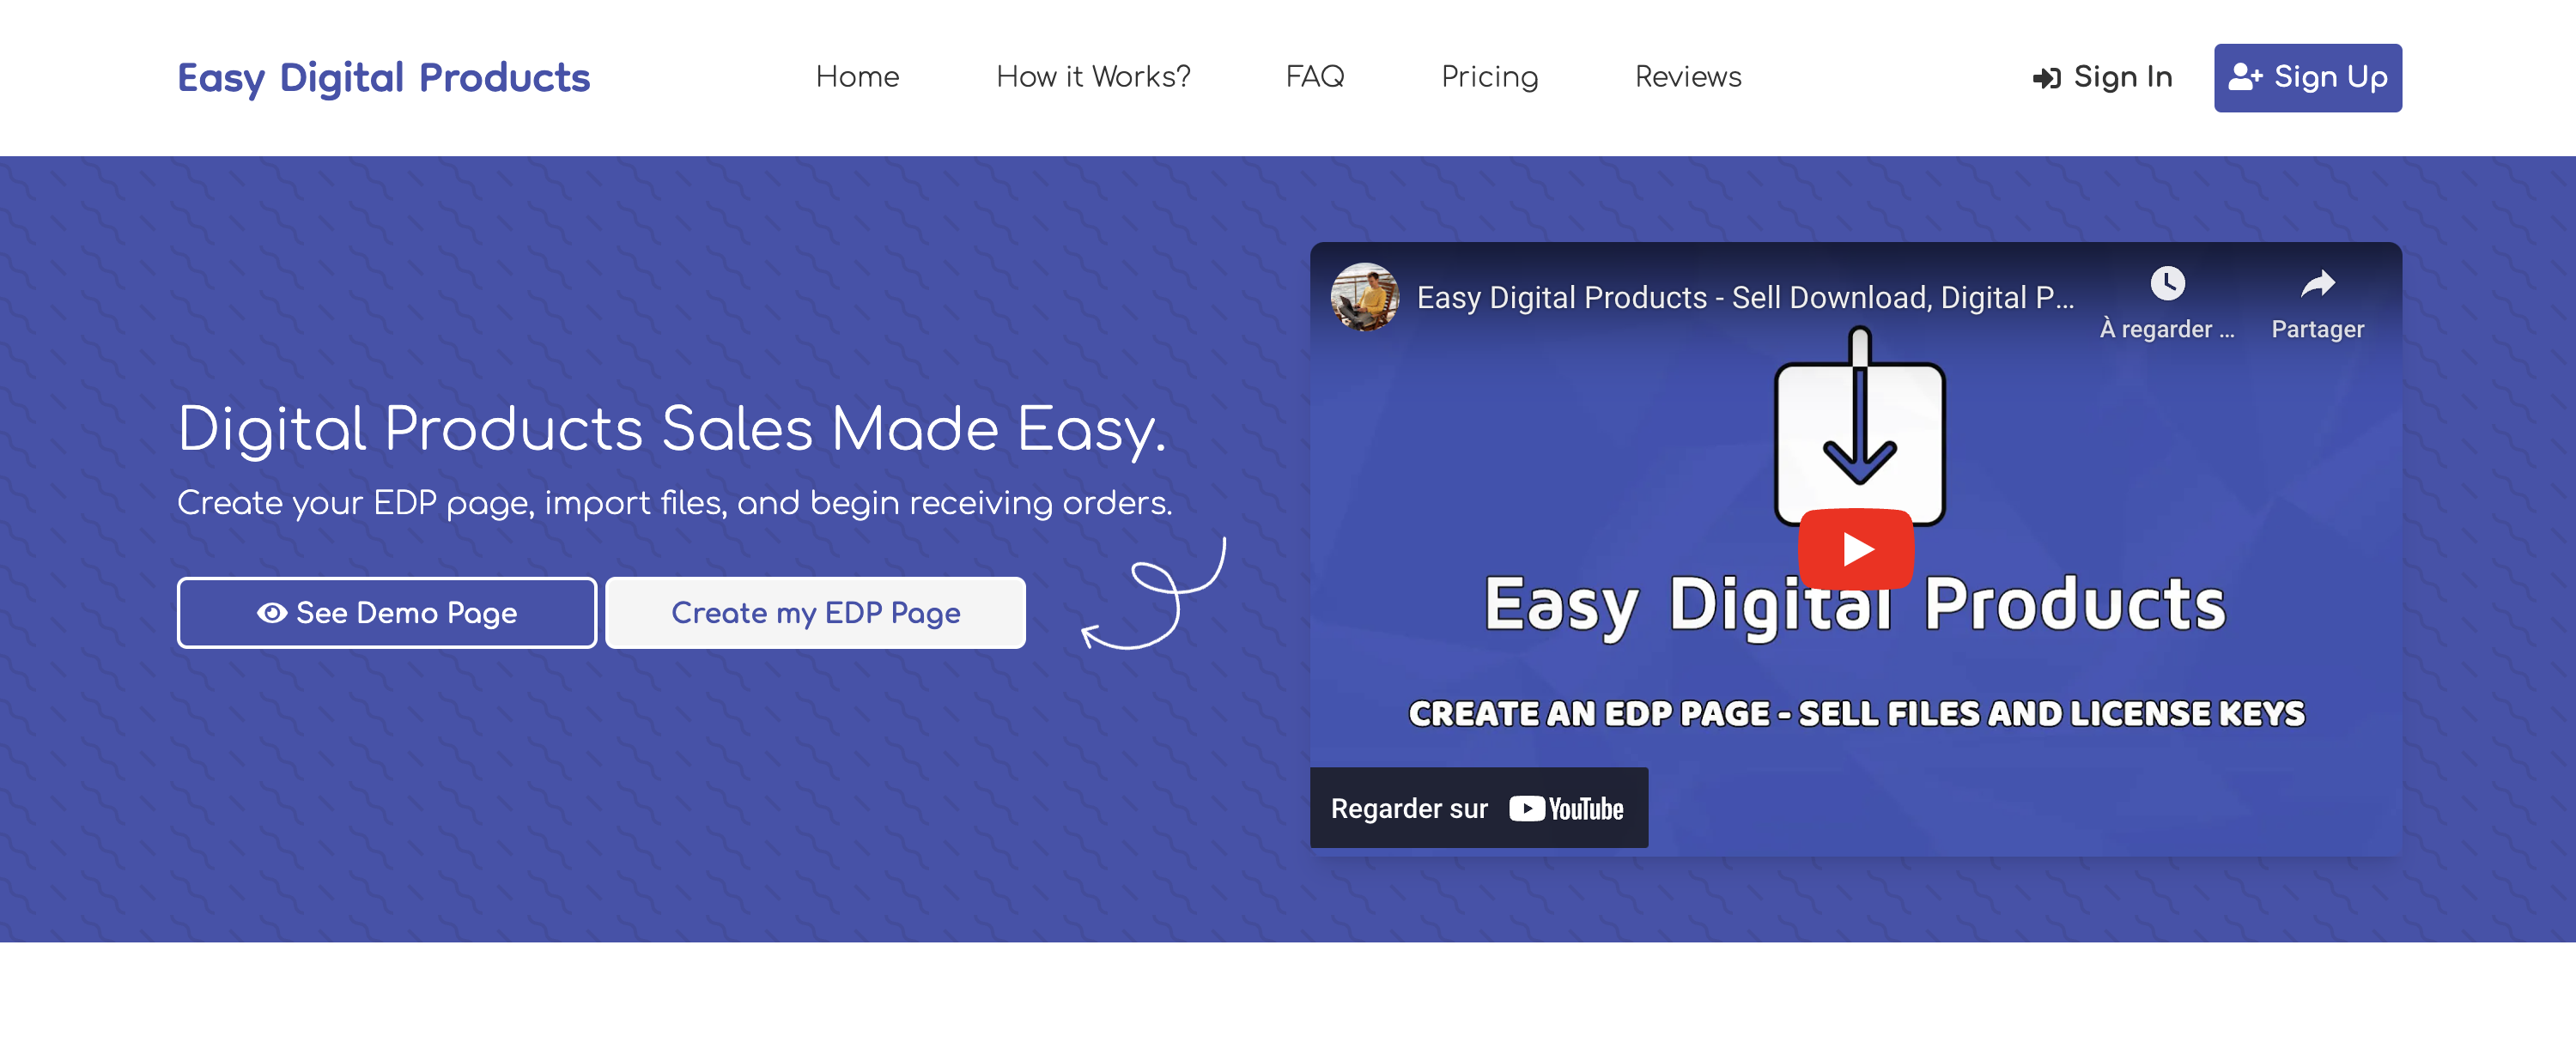 Easy Digital Products Easy Digital Products